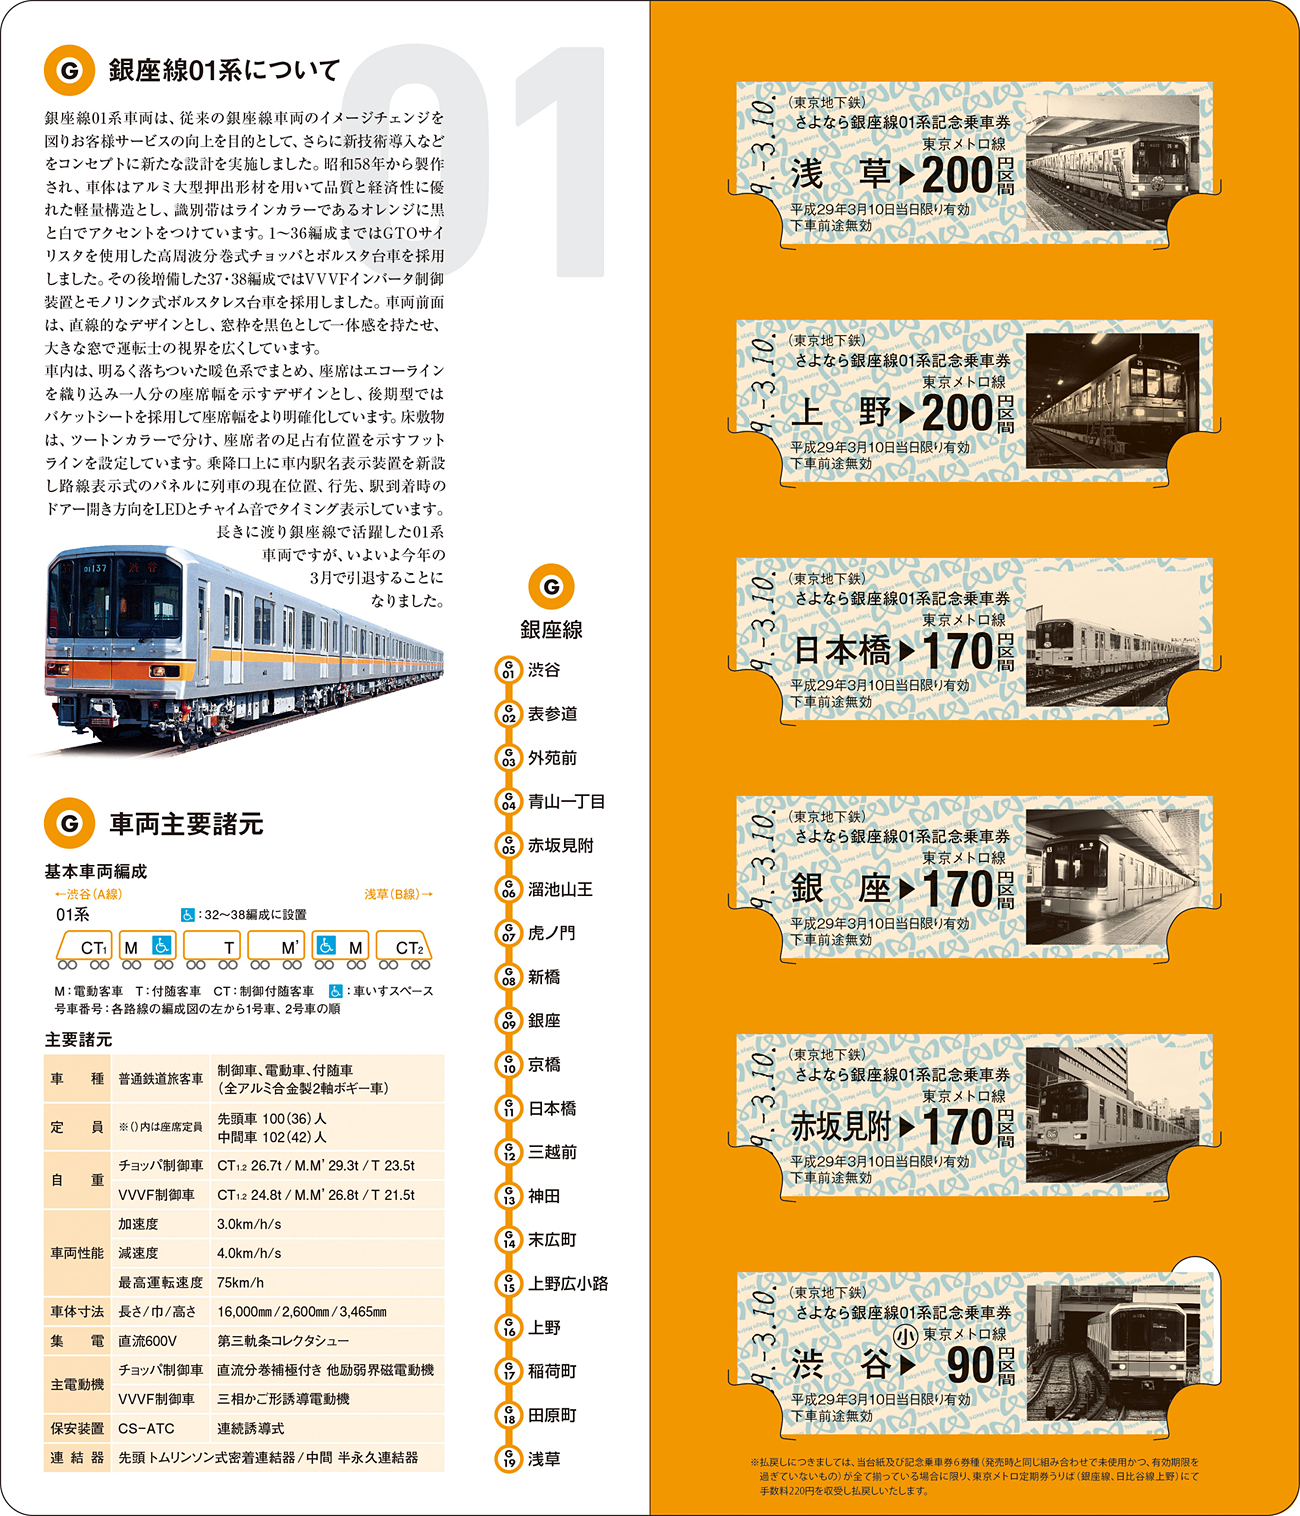 台紙付きの「さよなら銀座線01系記念乗車券」は5,000セットの限定発売